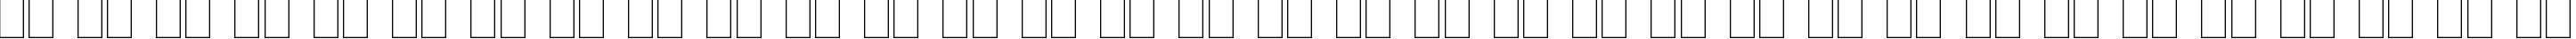 Пример написания русского алфавита шрифтом Frankenstein Plain:001.003